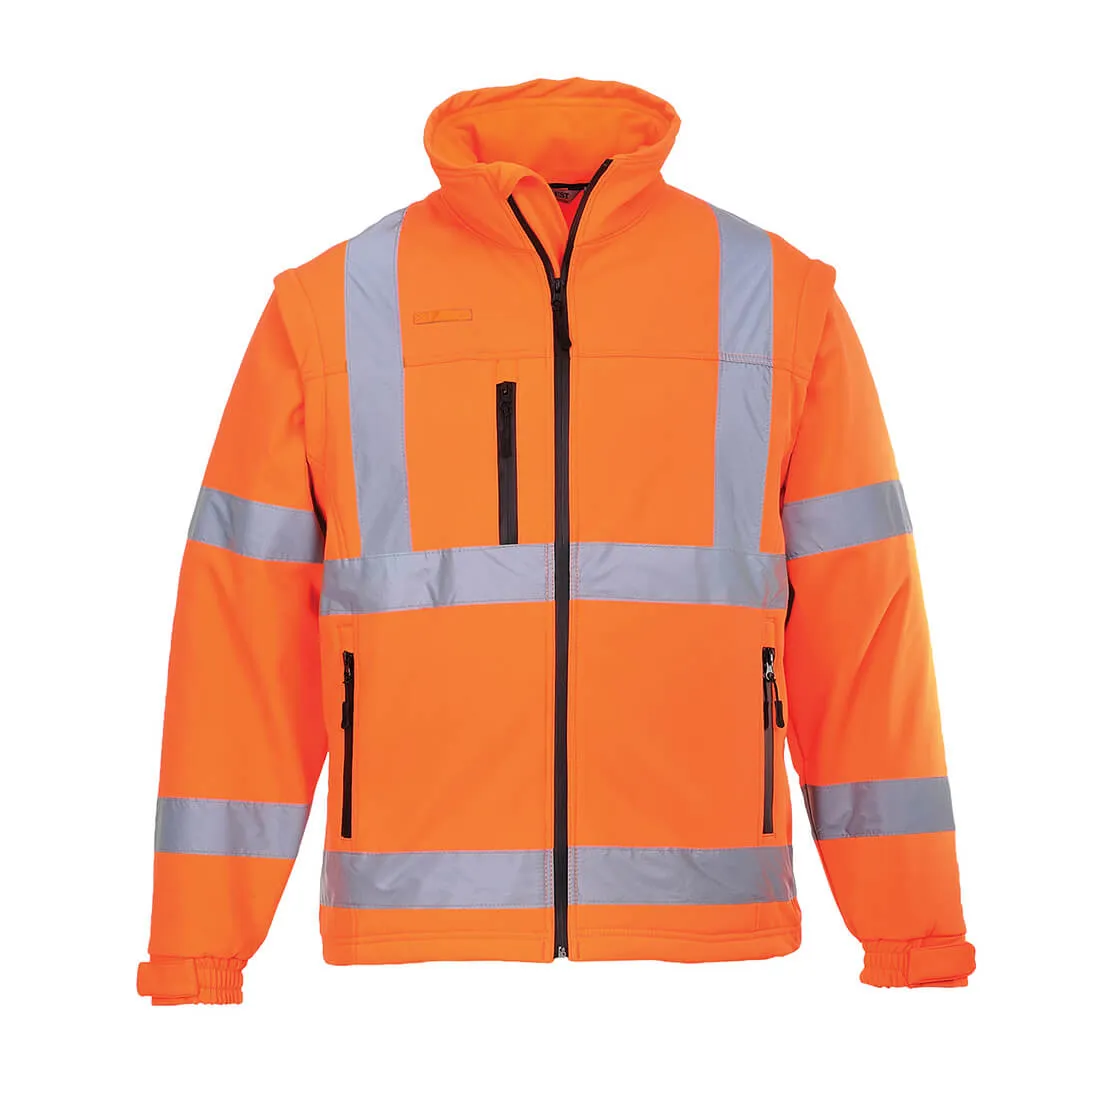 Portwest 2 in 1 Waterproof Hi Vis Softshell Jacket - Orange, XS